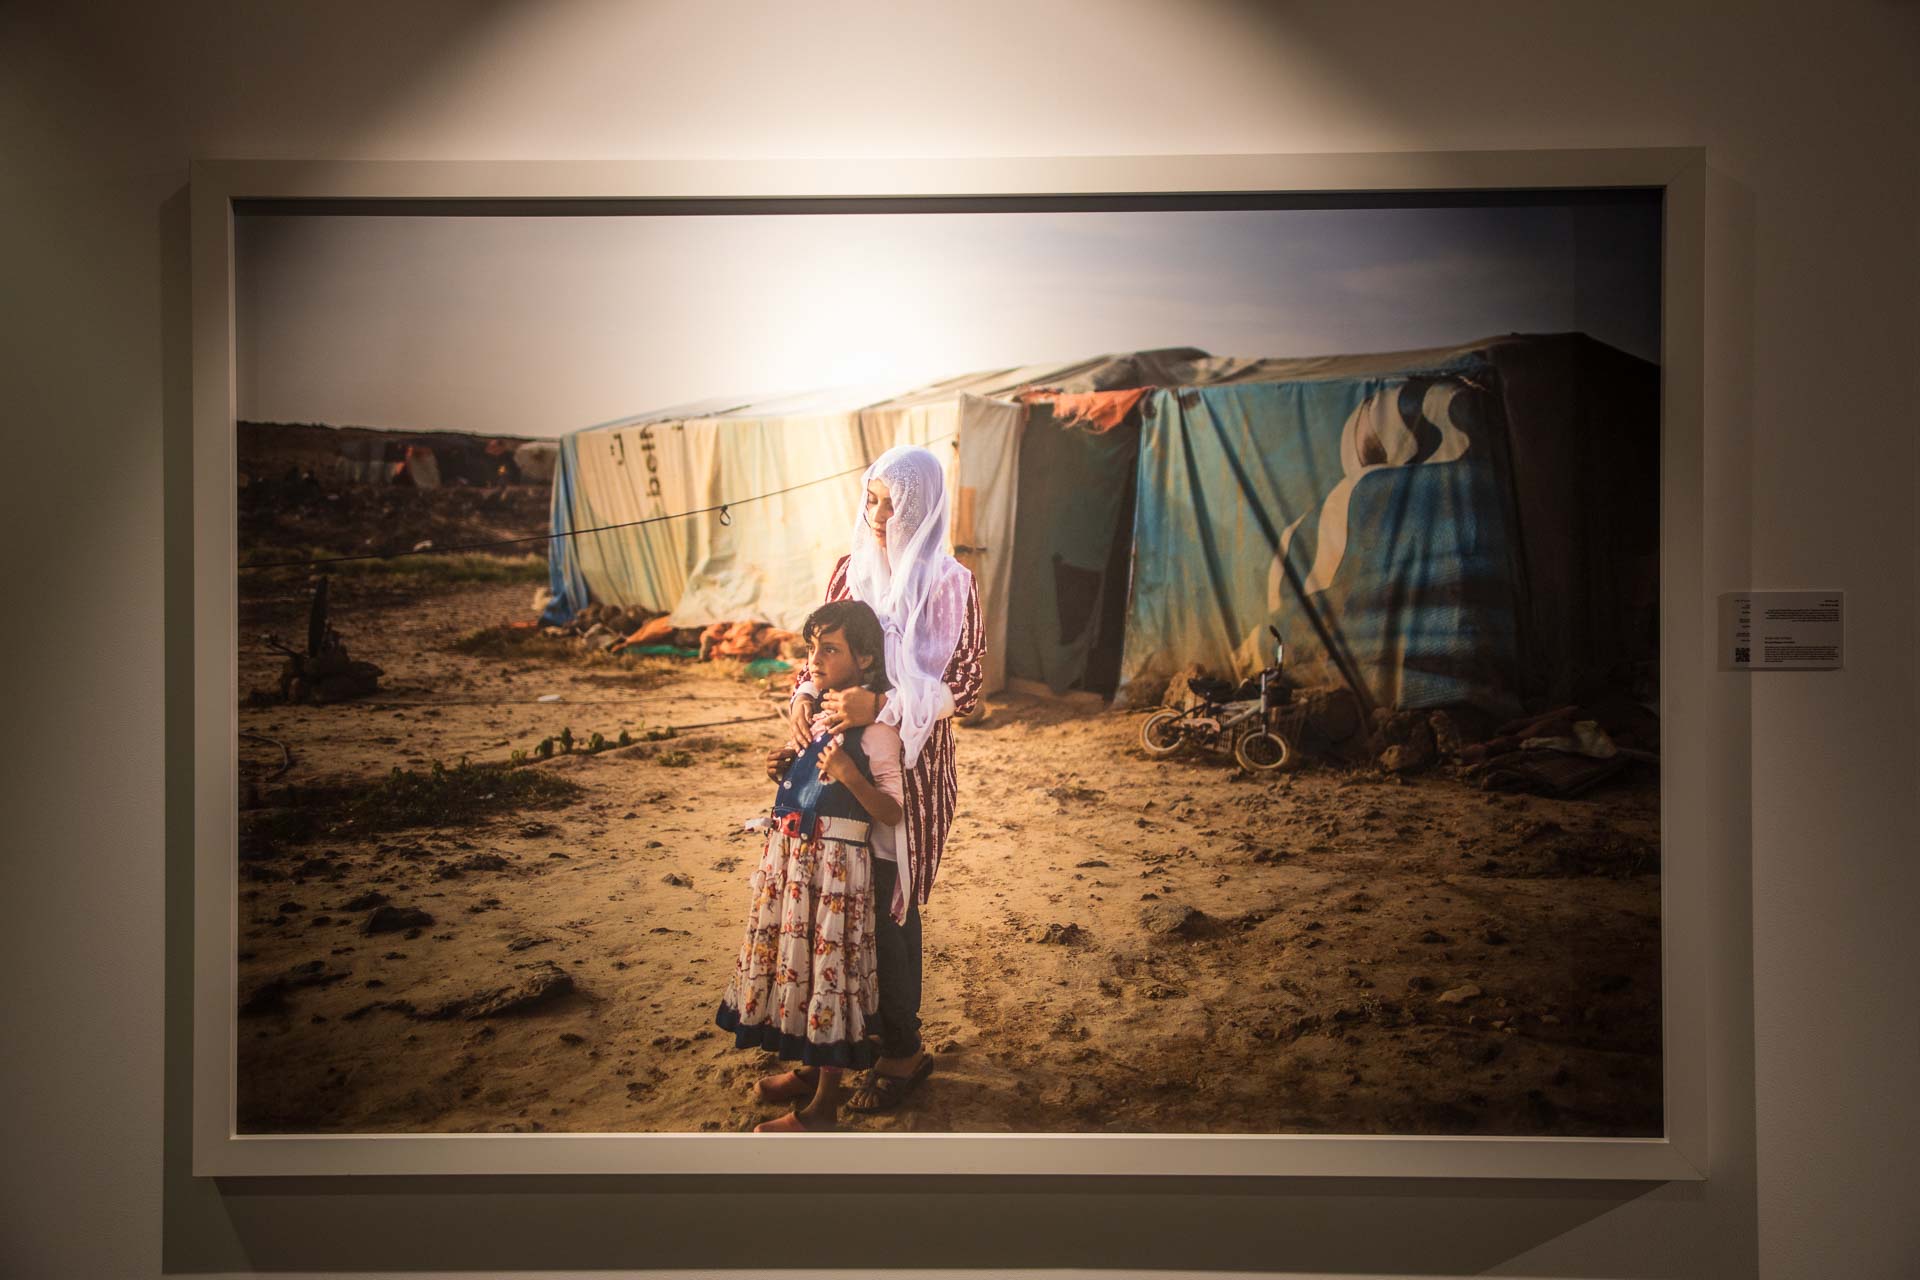 صور من معرض يوميات لاجئ في إكسبوجر 2018 (2)